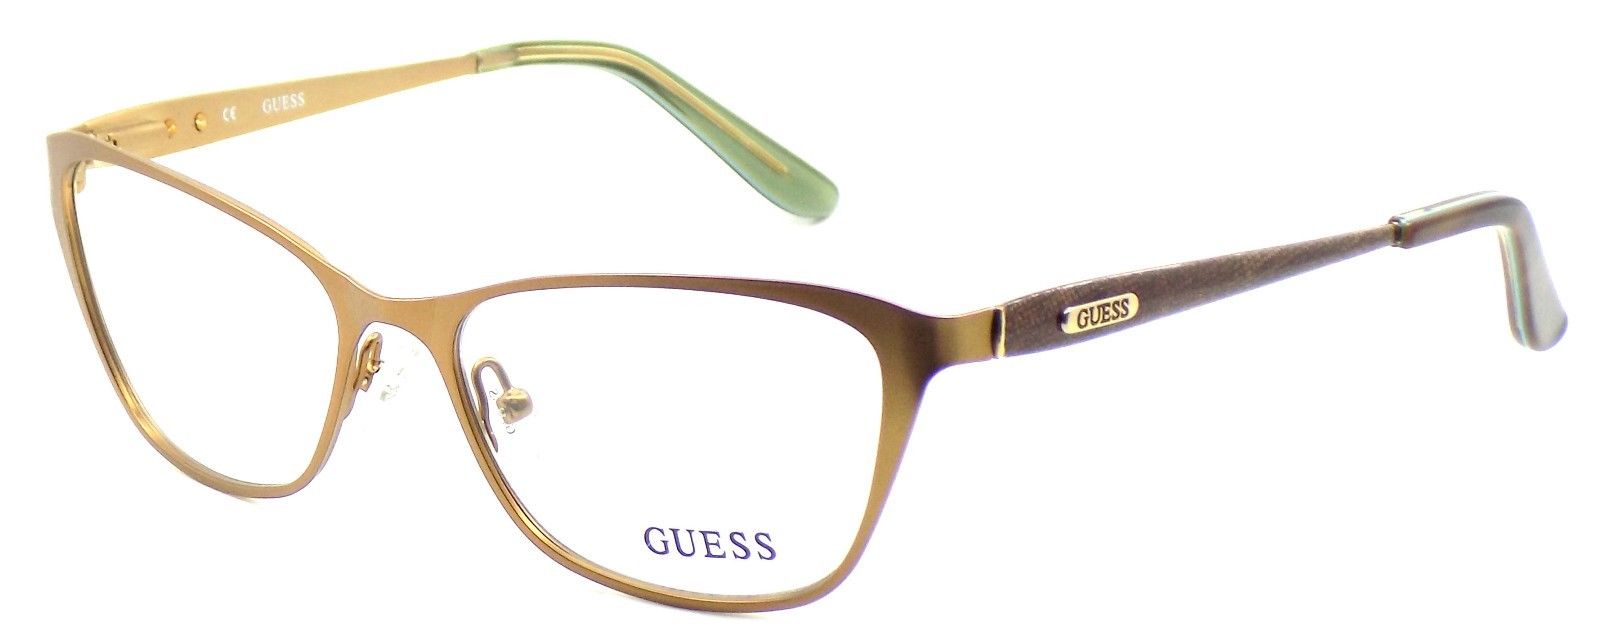 1-GUESS GU2425 BRN Women's Eyeglasses Frames 52-16-135 Light Brown + CASE-715583997608-IKSpecs